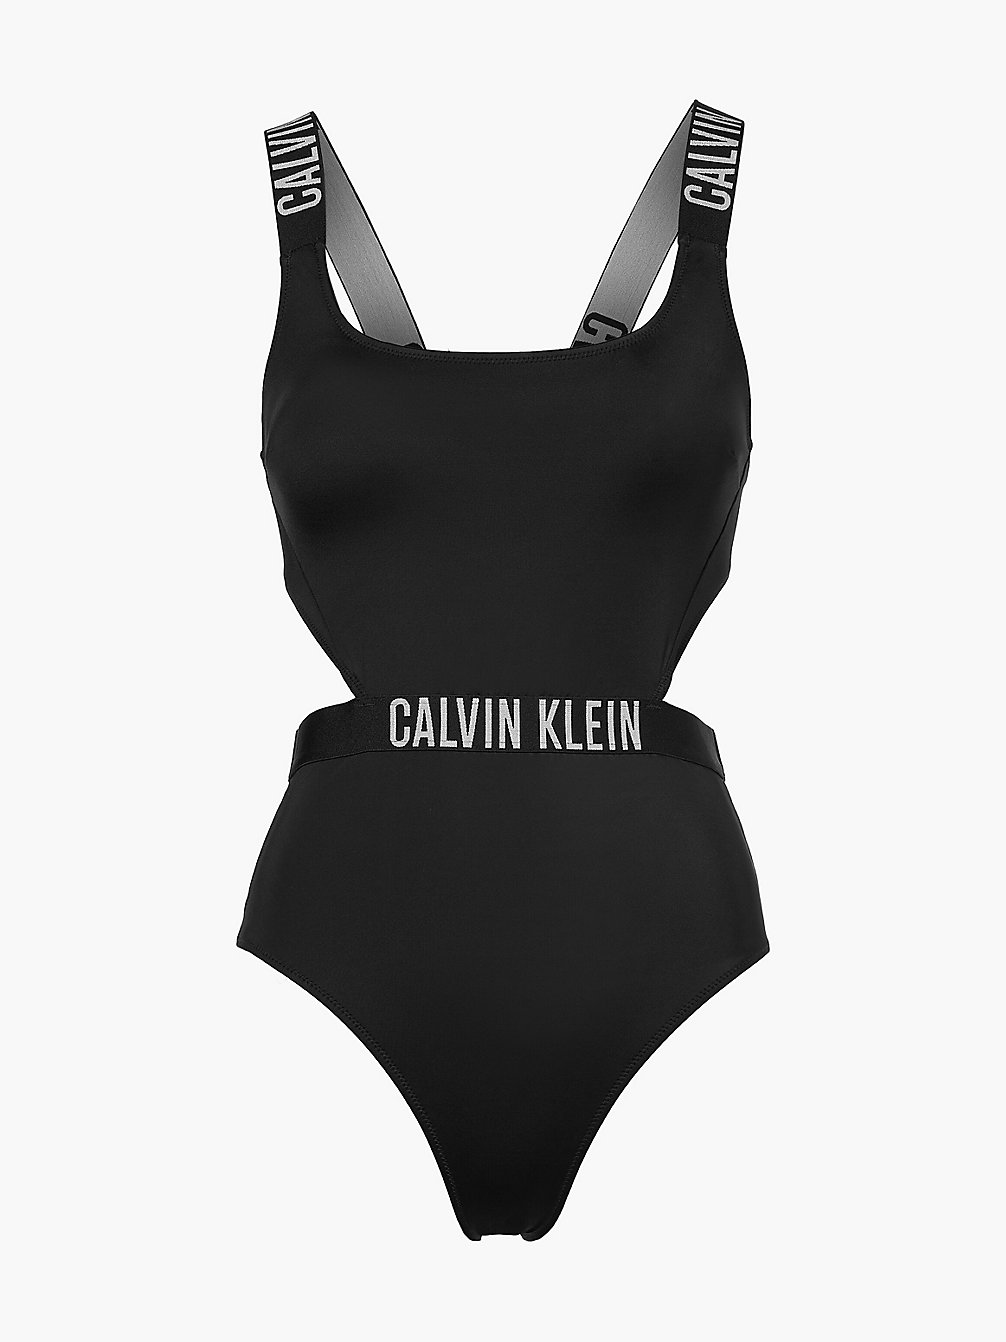 PVH BLACK Maillot De Bain Ajouré - Intense Power undefined femmes Calvin Klein